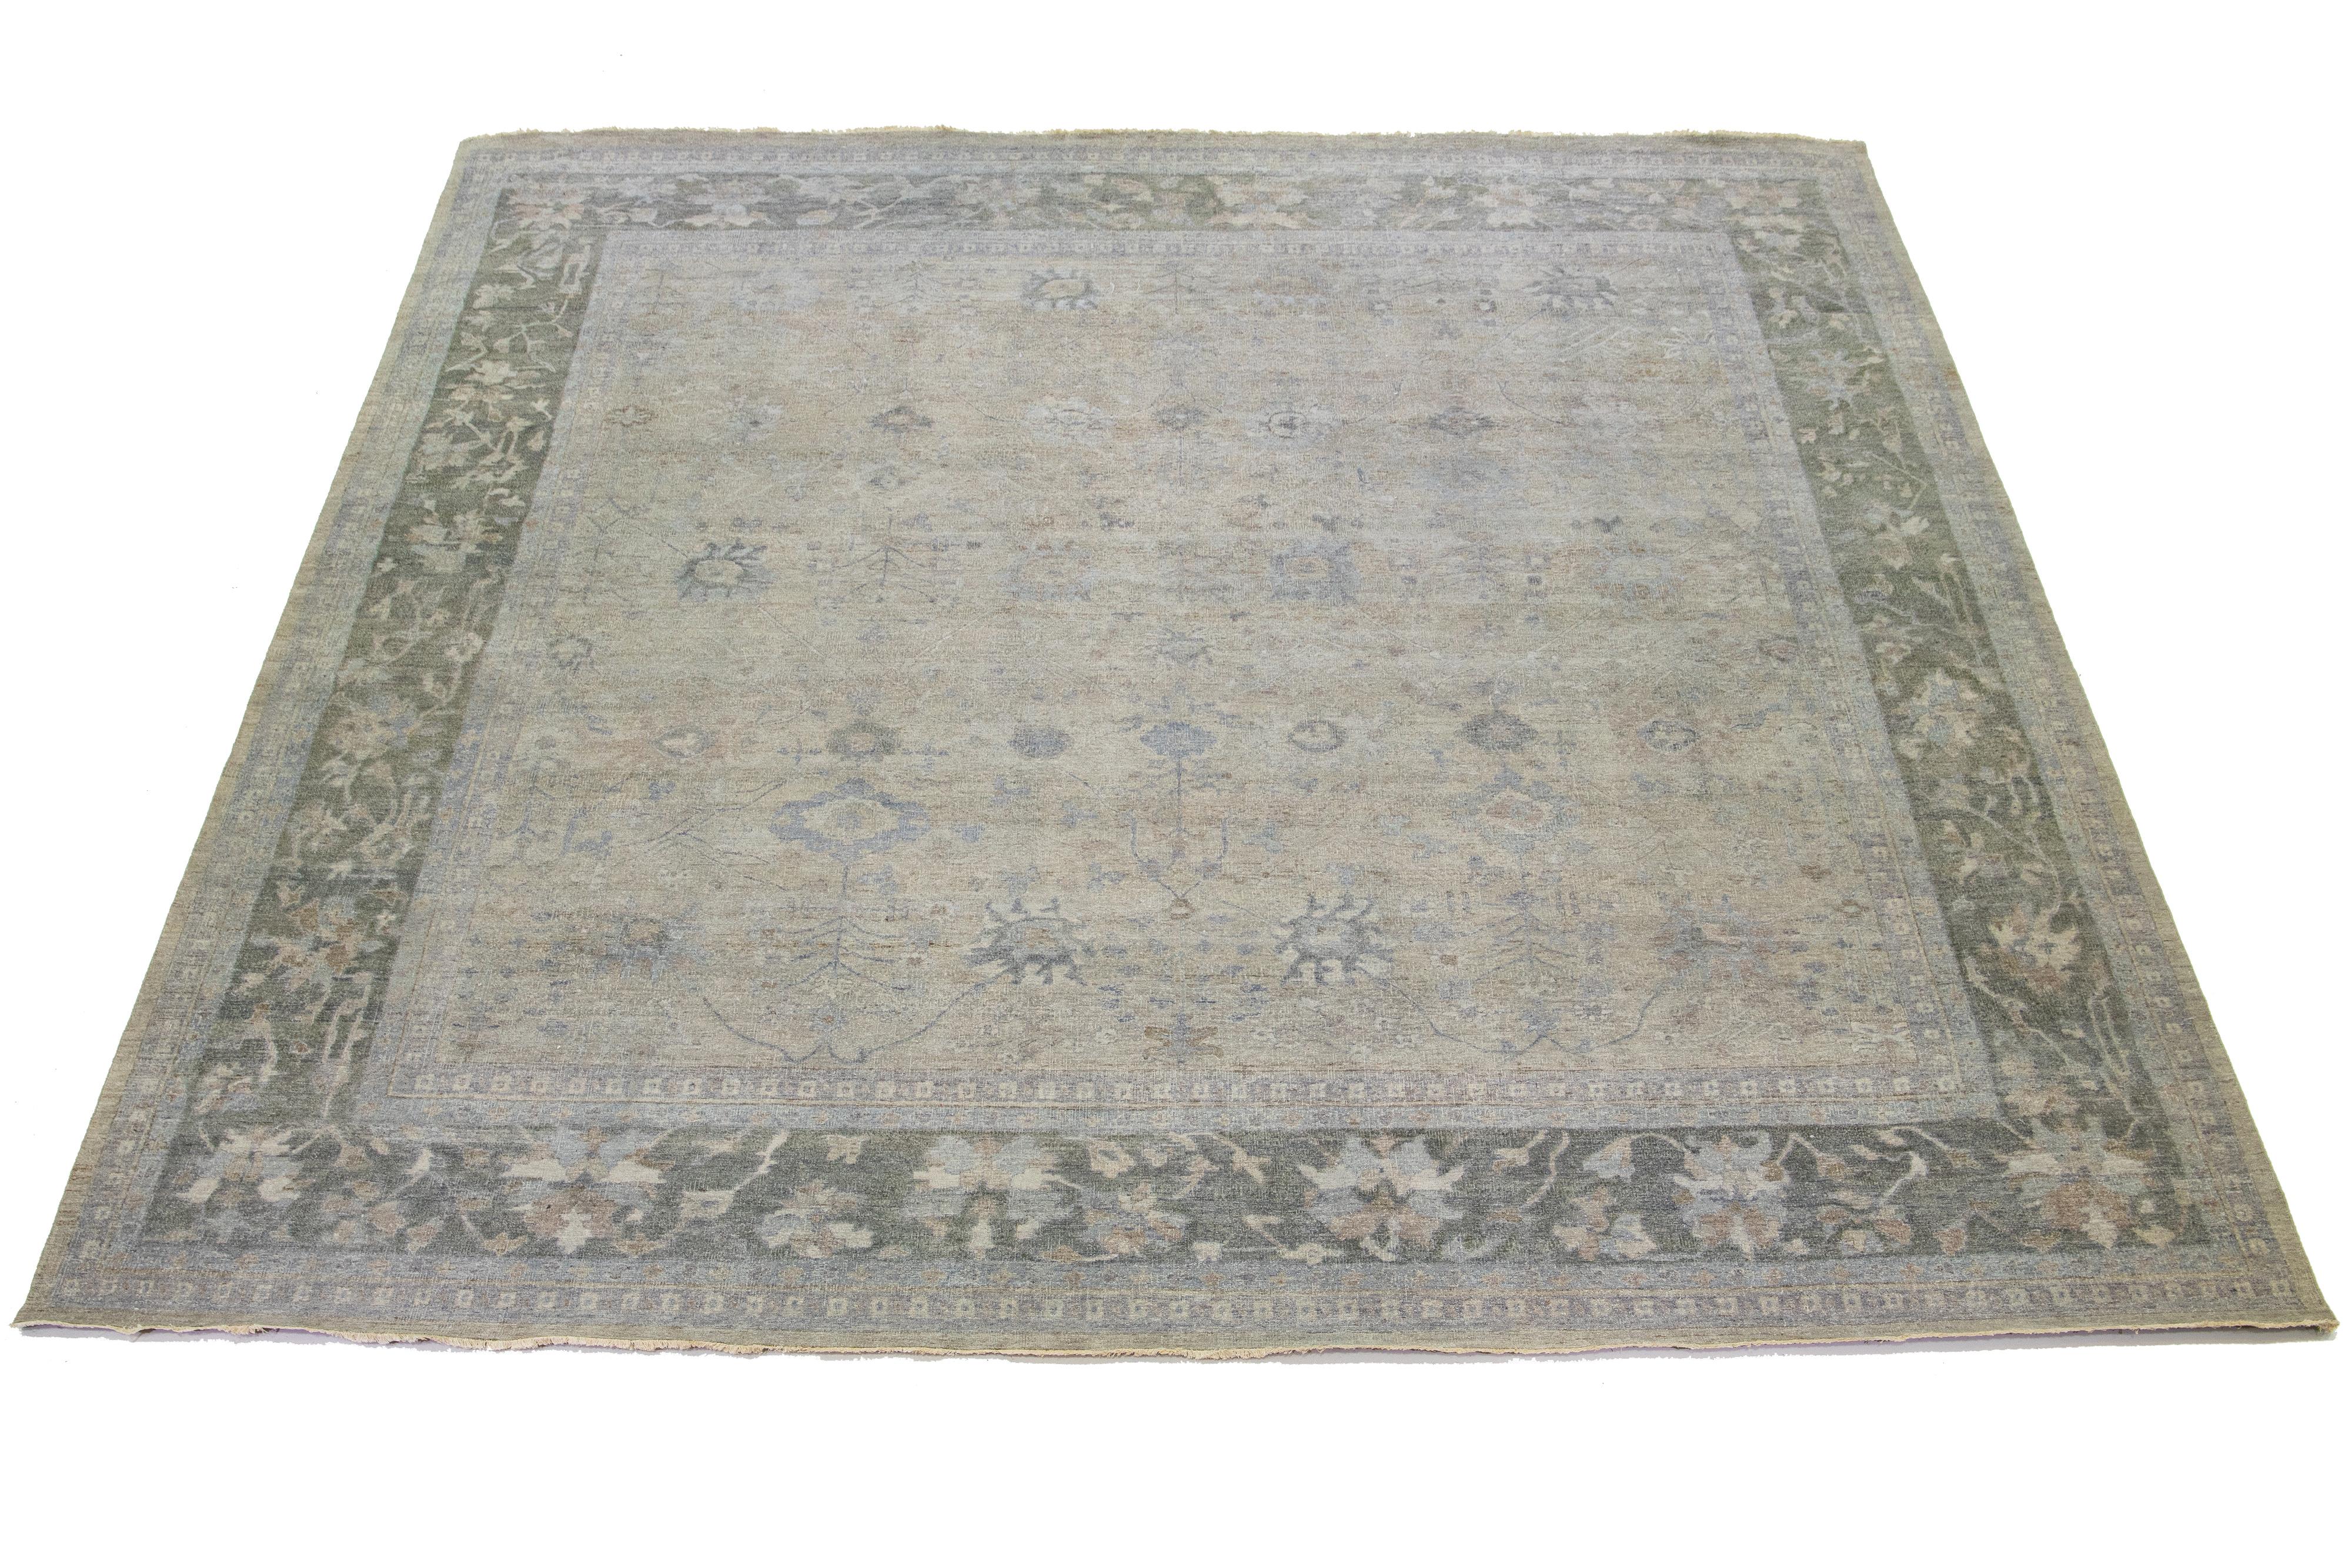 Die Artisan-Linie von Apadana bringt einen exquisiten antiken Stil in jeden Raum. Dieser handgeknüpfte quadratische Teppich zeigt ein wunderschönes florales Allover-Muster mit grauer Farbgebung und blauen und braunen Akzenten. Er ist 14' 7